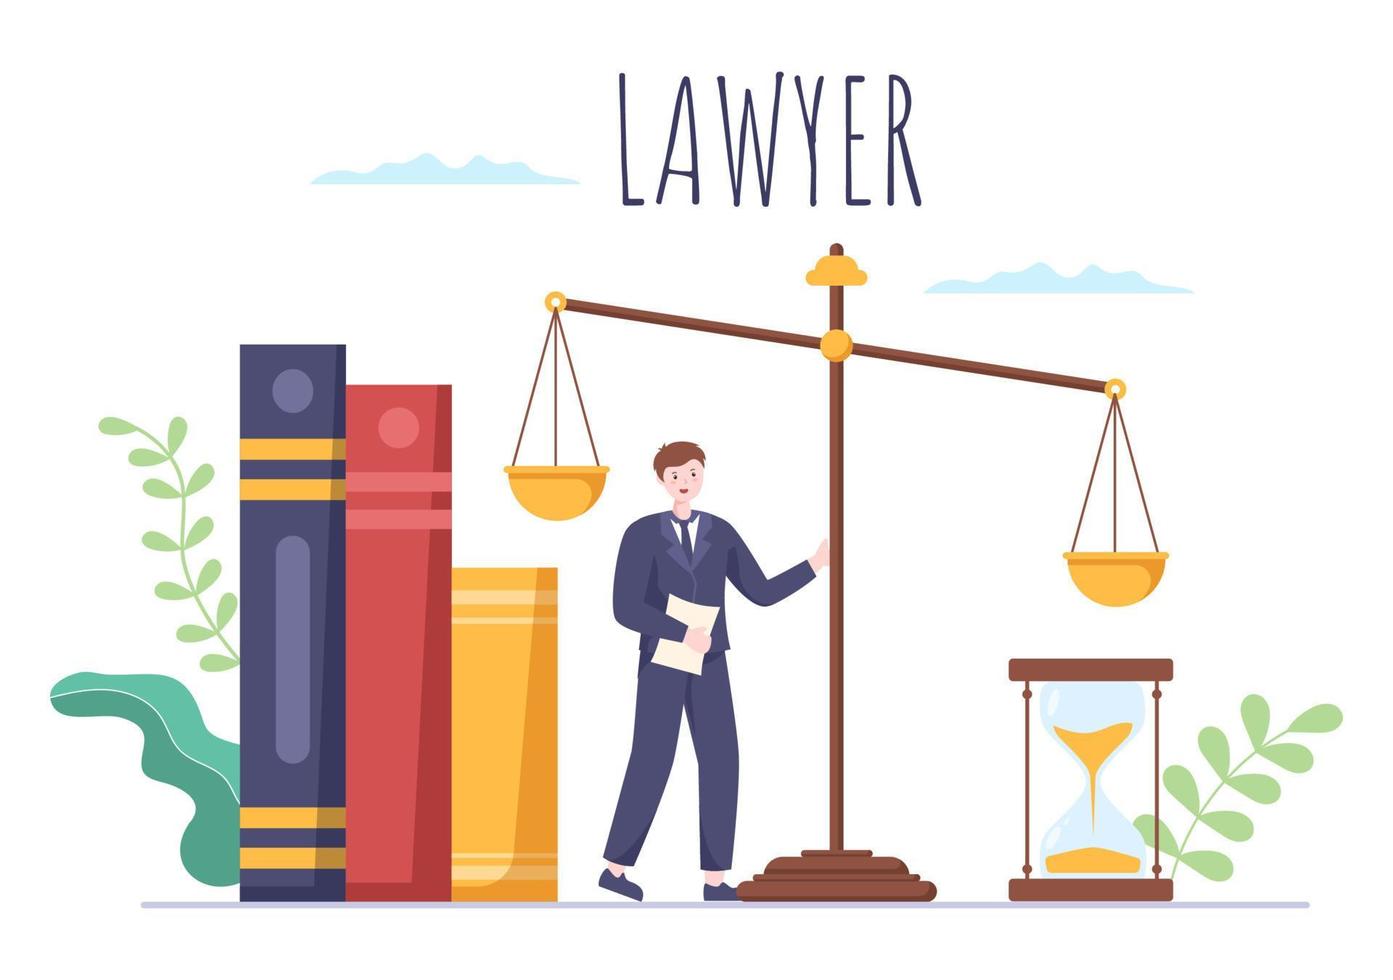 avvocato, avvocato e giustizia con leggi, scale, edifici, libro o martello del giudice di legno a consulente nell'illustrazione piana del fumetto vettore